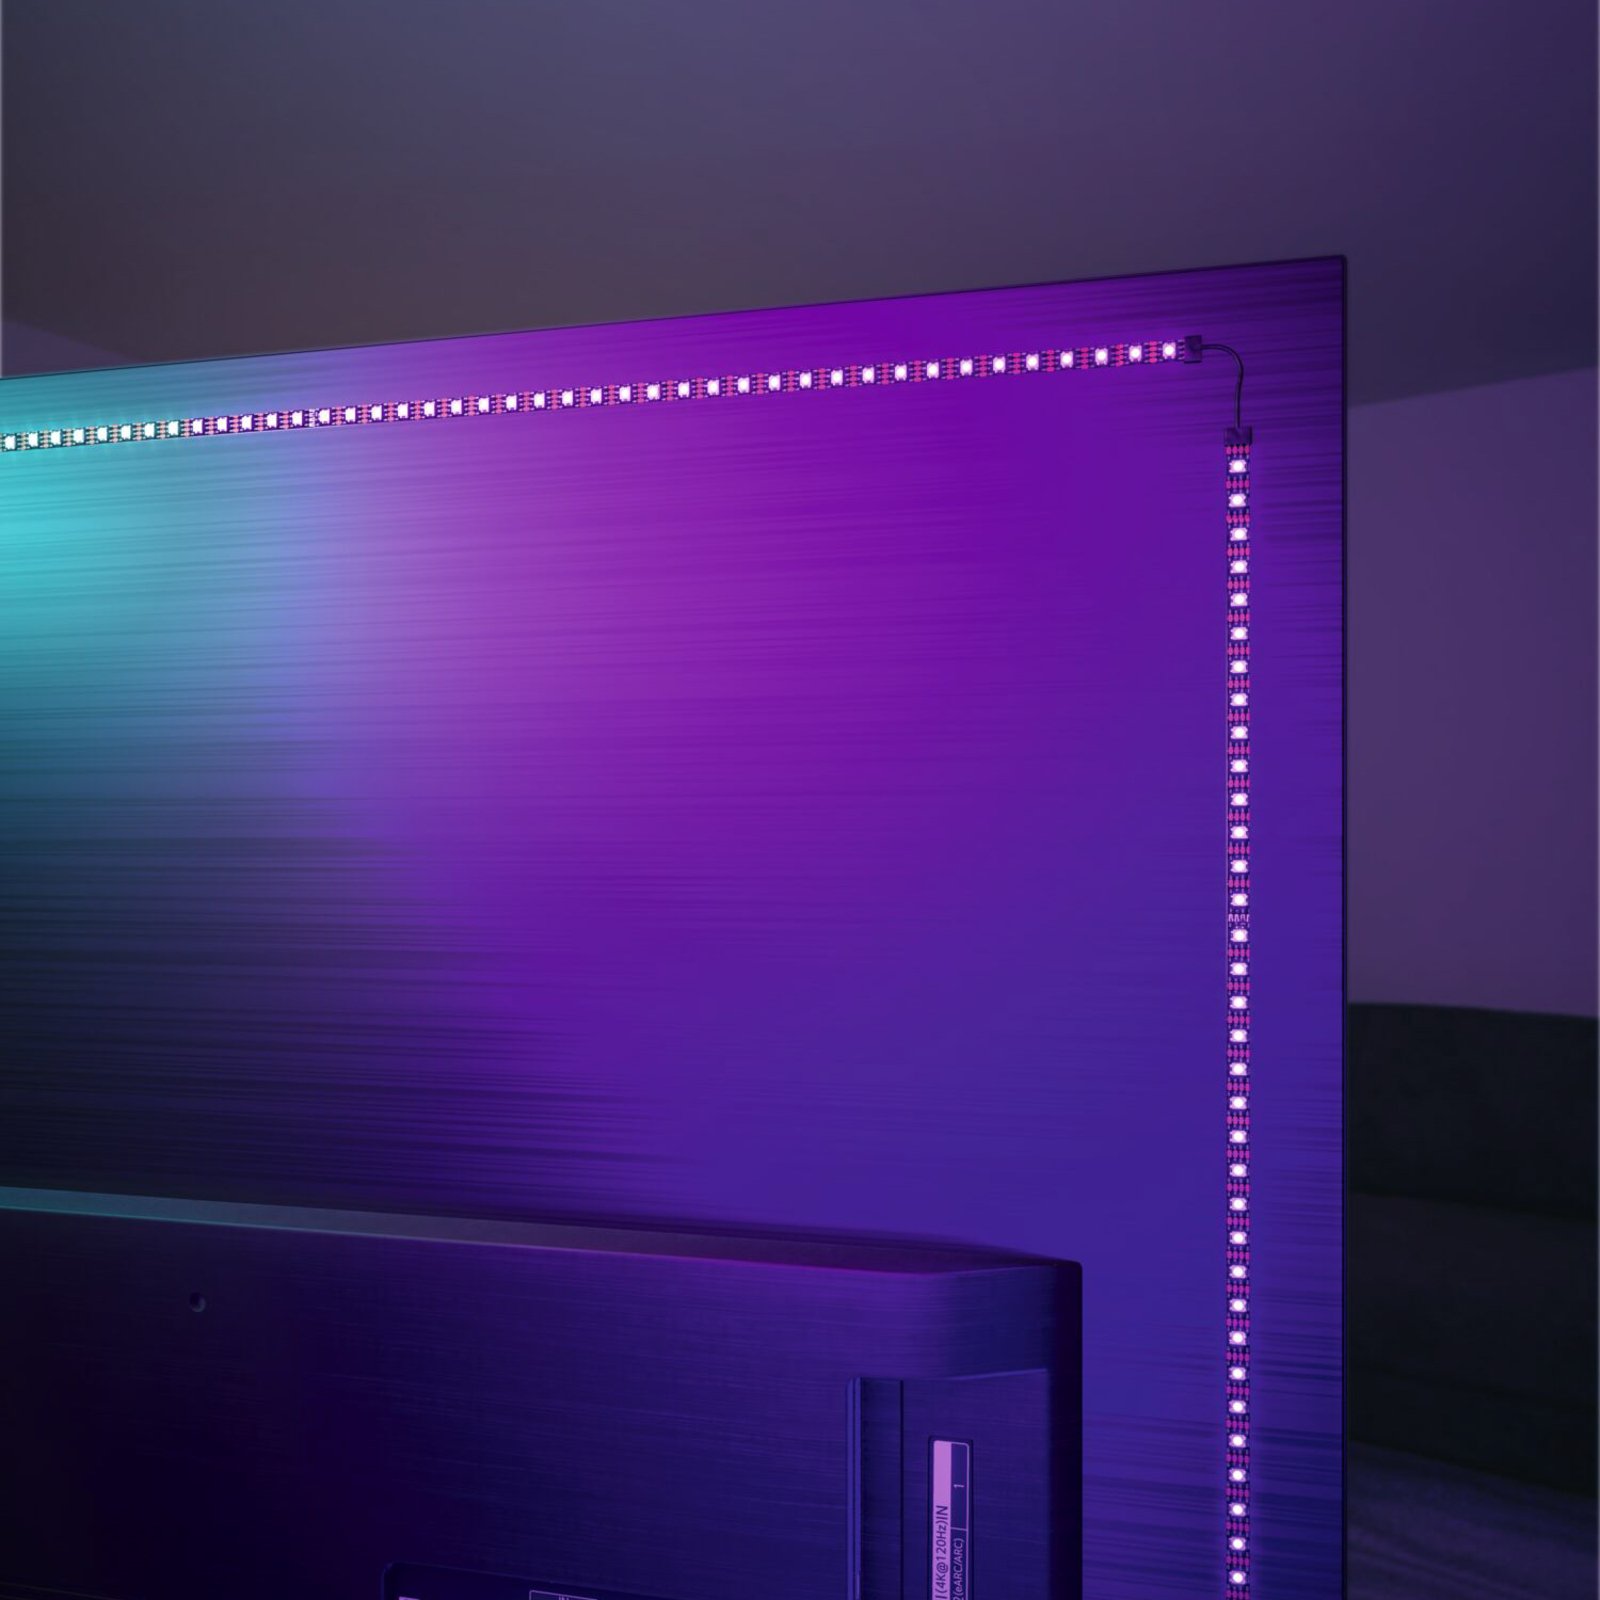 Paulmann EntertainLED striscia LED RGB Set 55 pollici